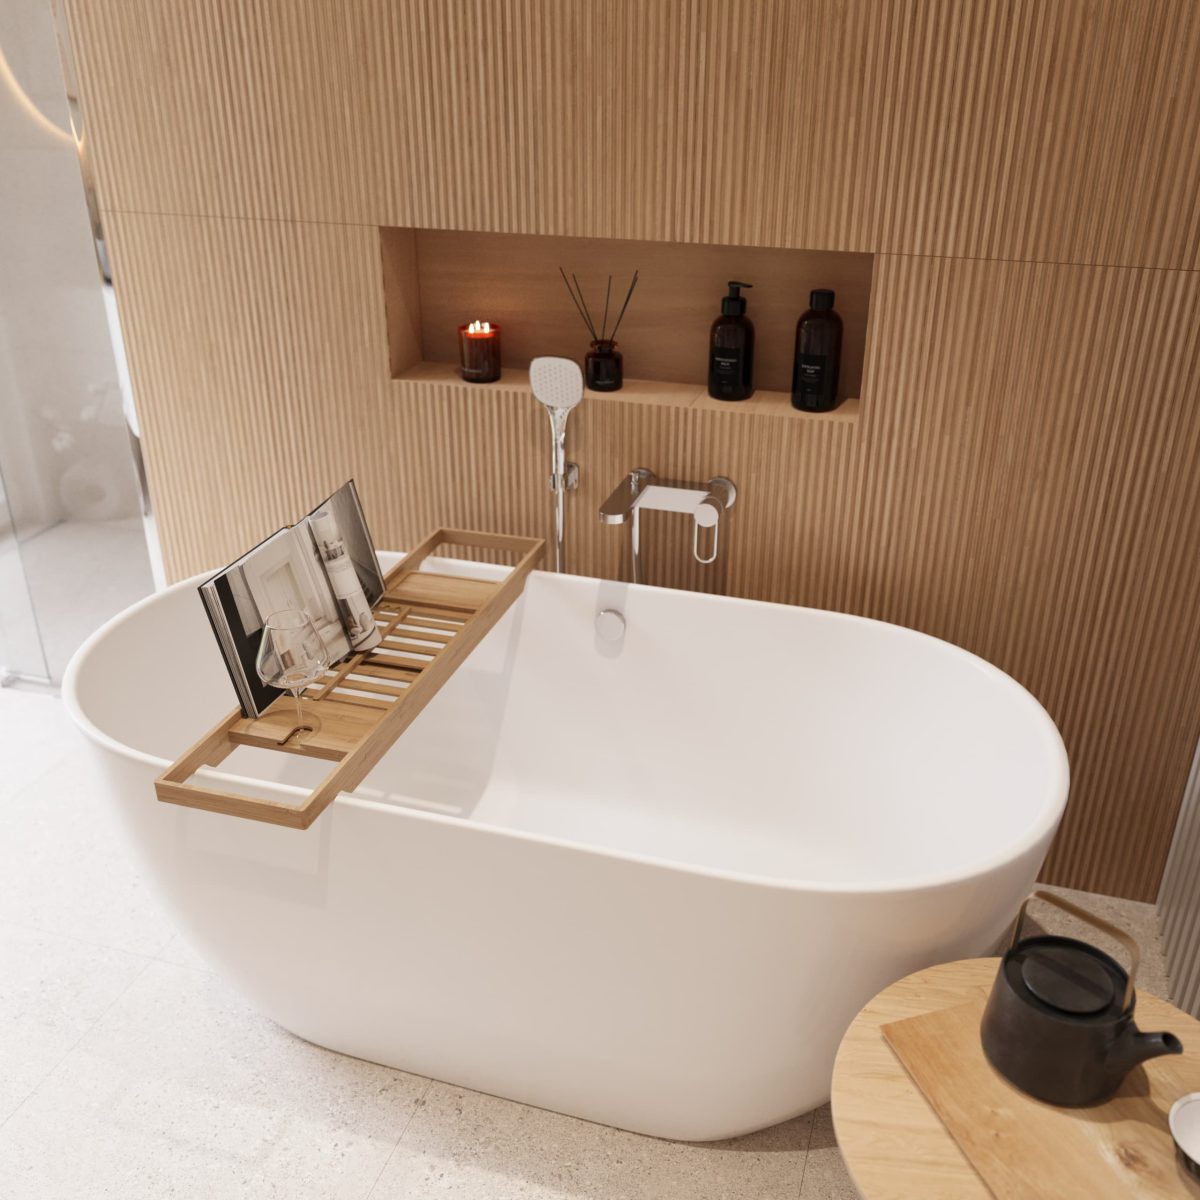 SIKO_Volně stojící vana s dřevěnou poličkou na vanu, dřevěný obklad v designu lamel, nika u vany, koupelna v japandi stylu a doplňky.